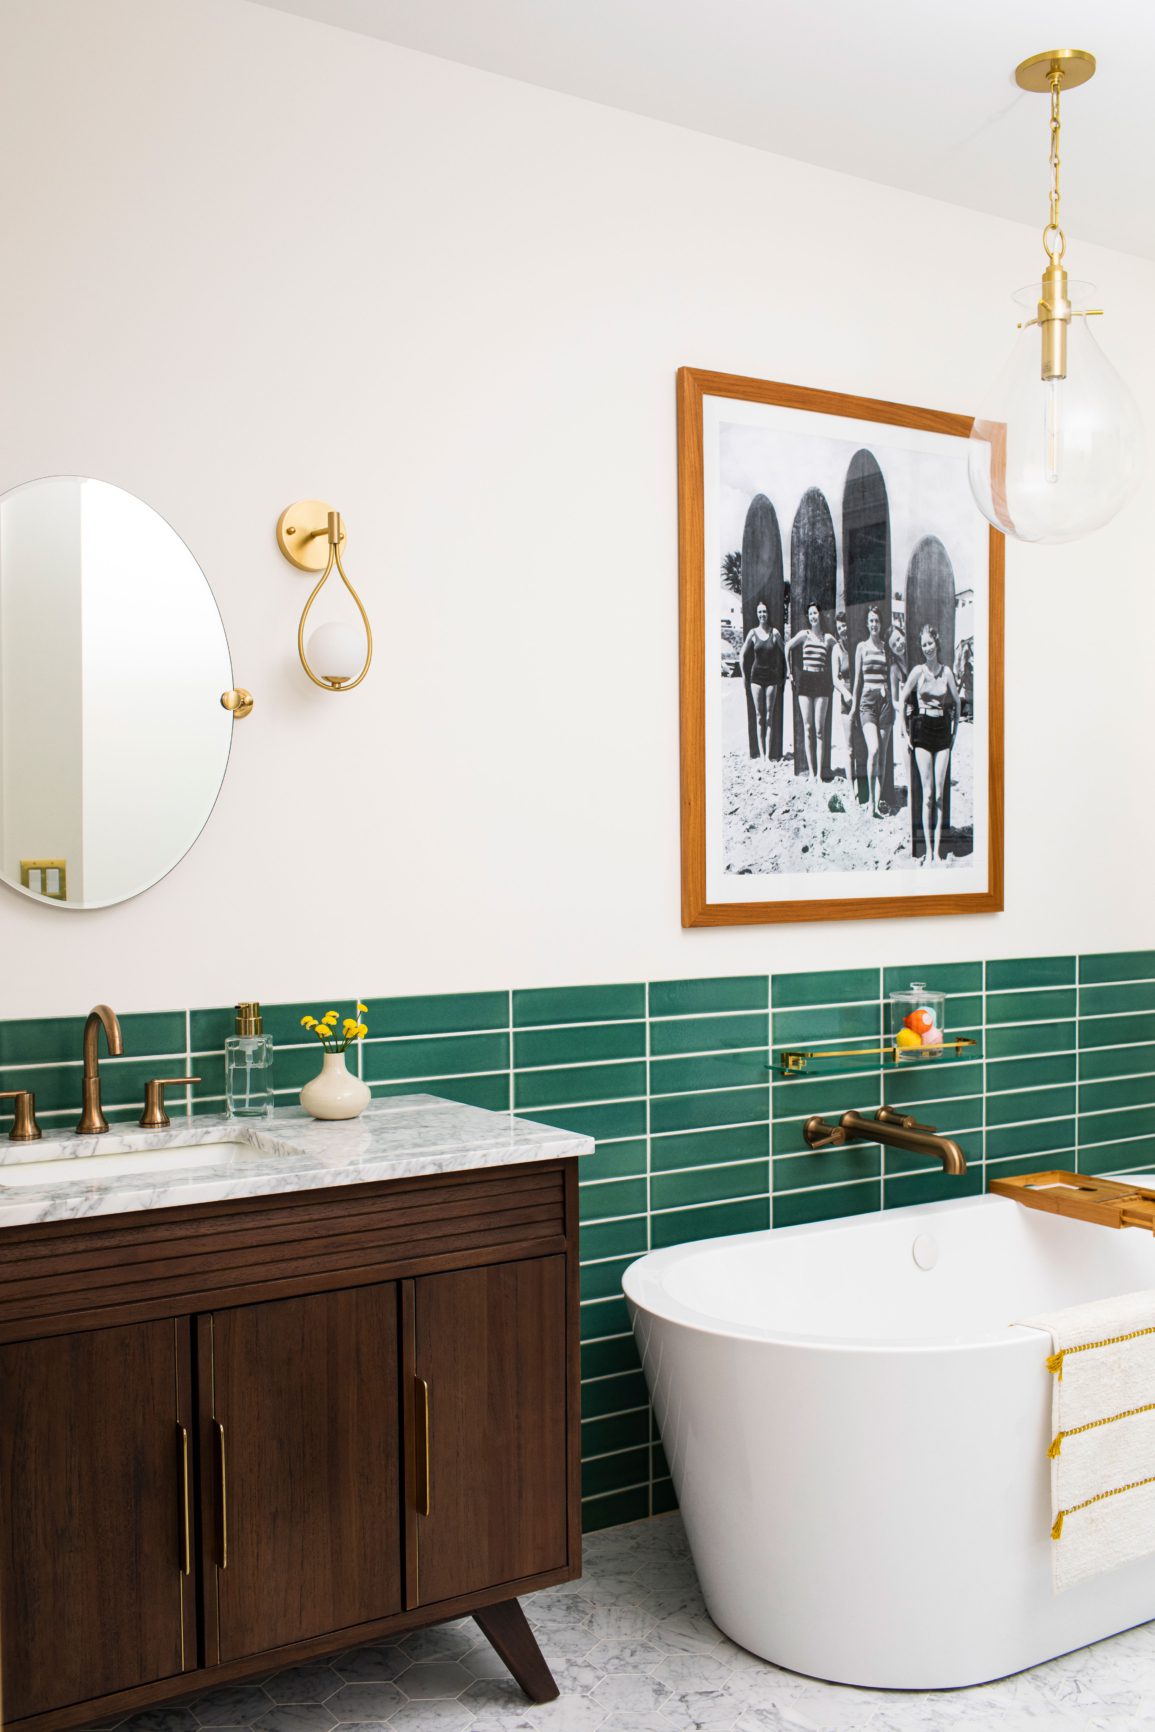 Green tiled bathroom with soaking tub